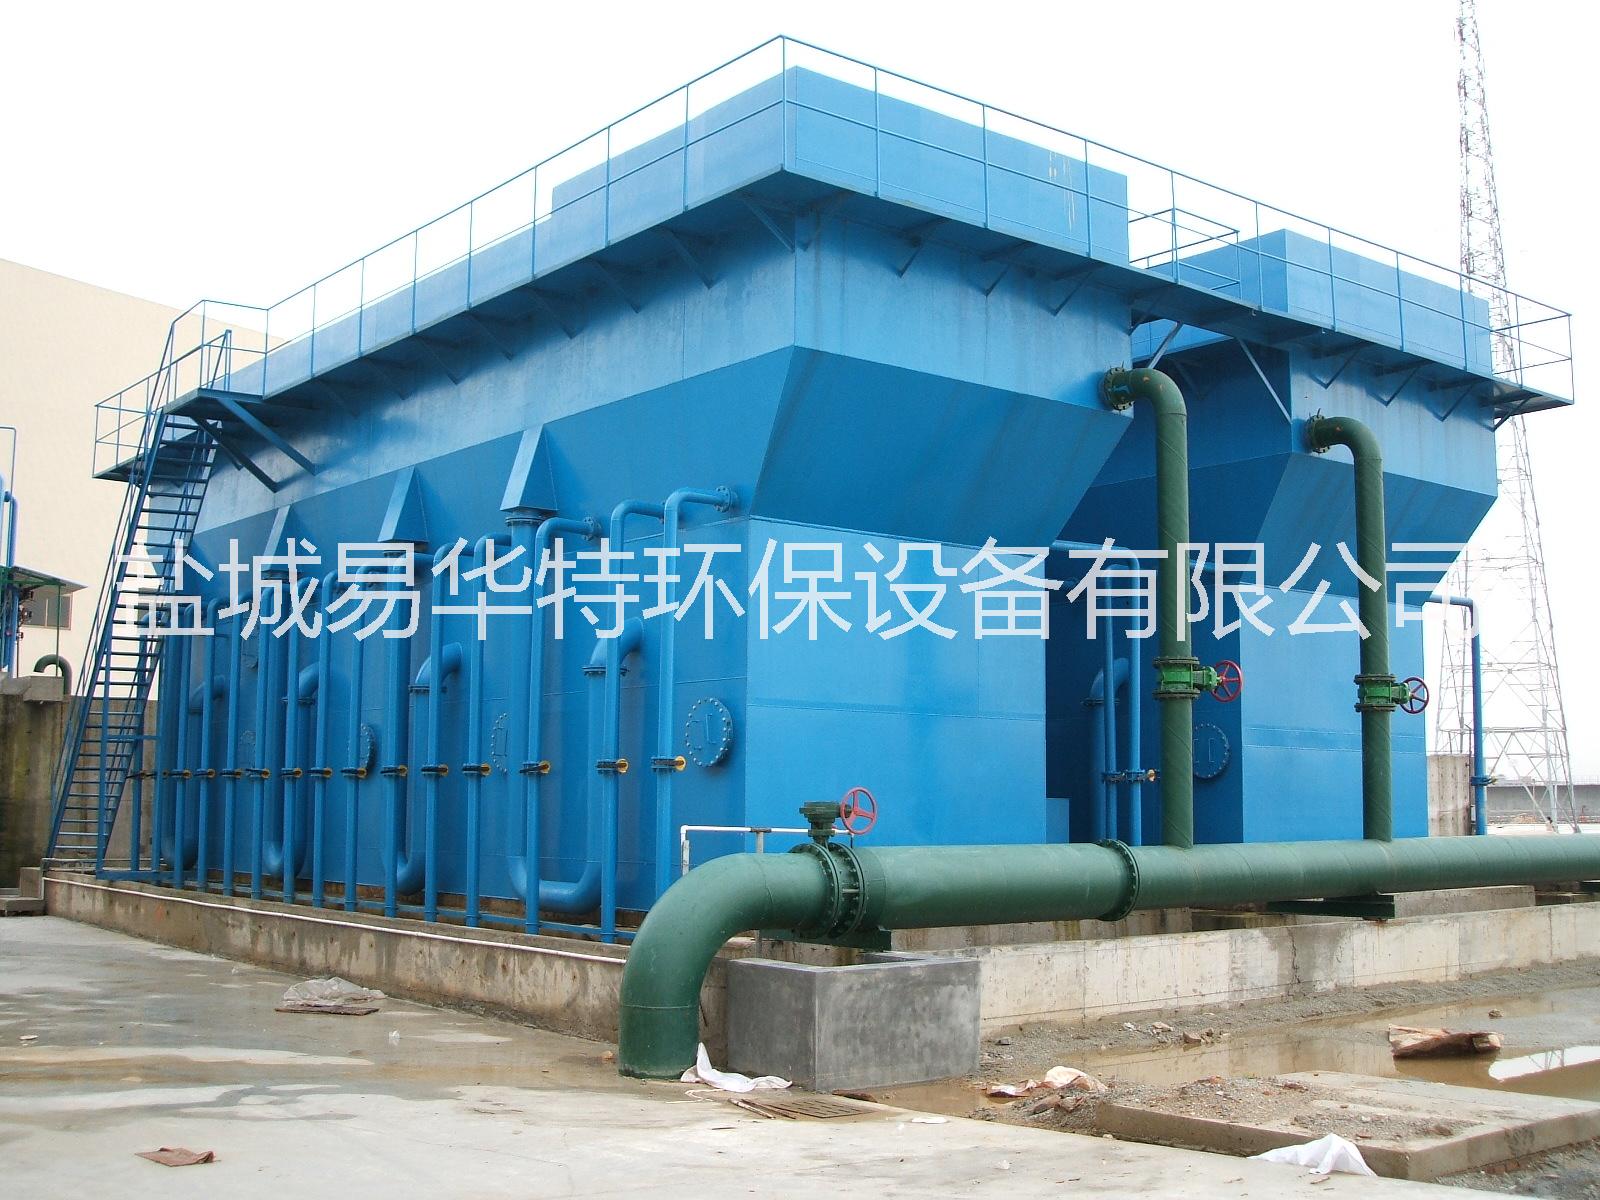 水处理工程|污水处理设备水处理工程|污水处理设备